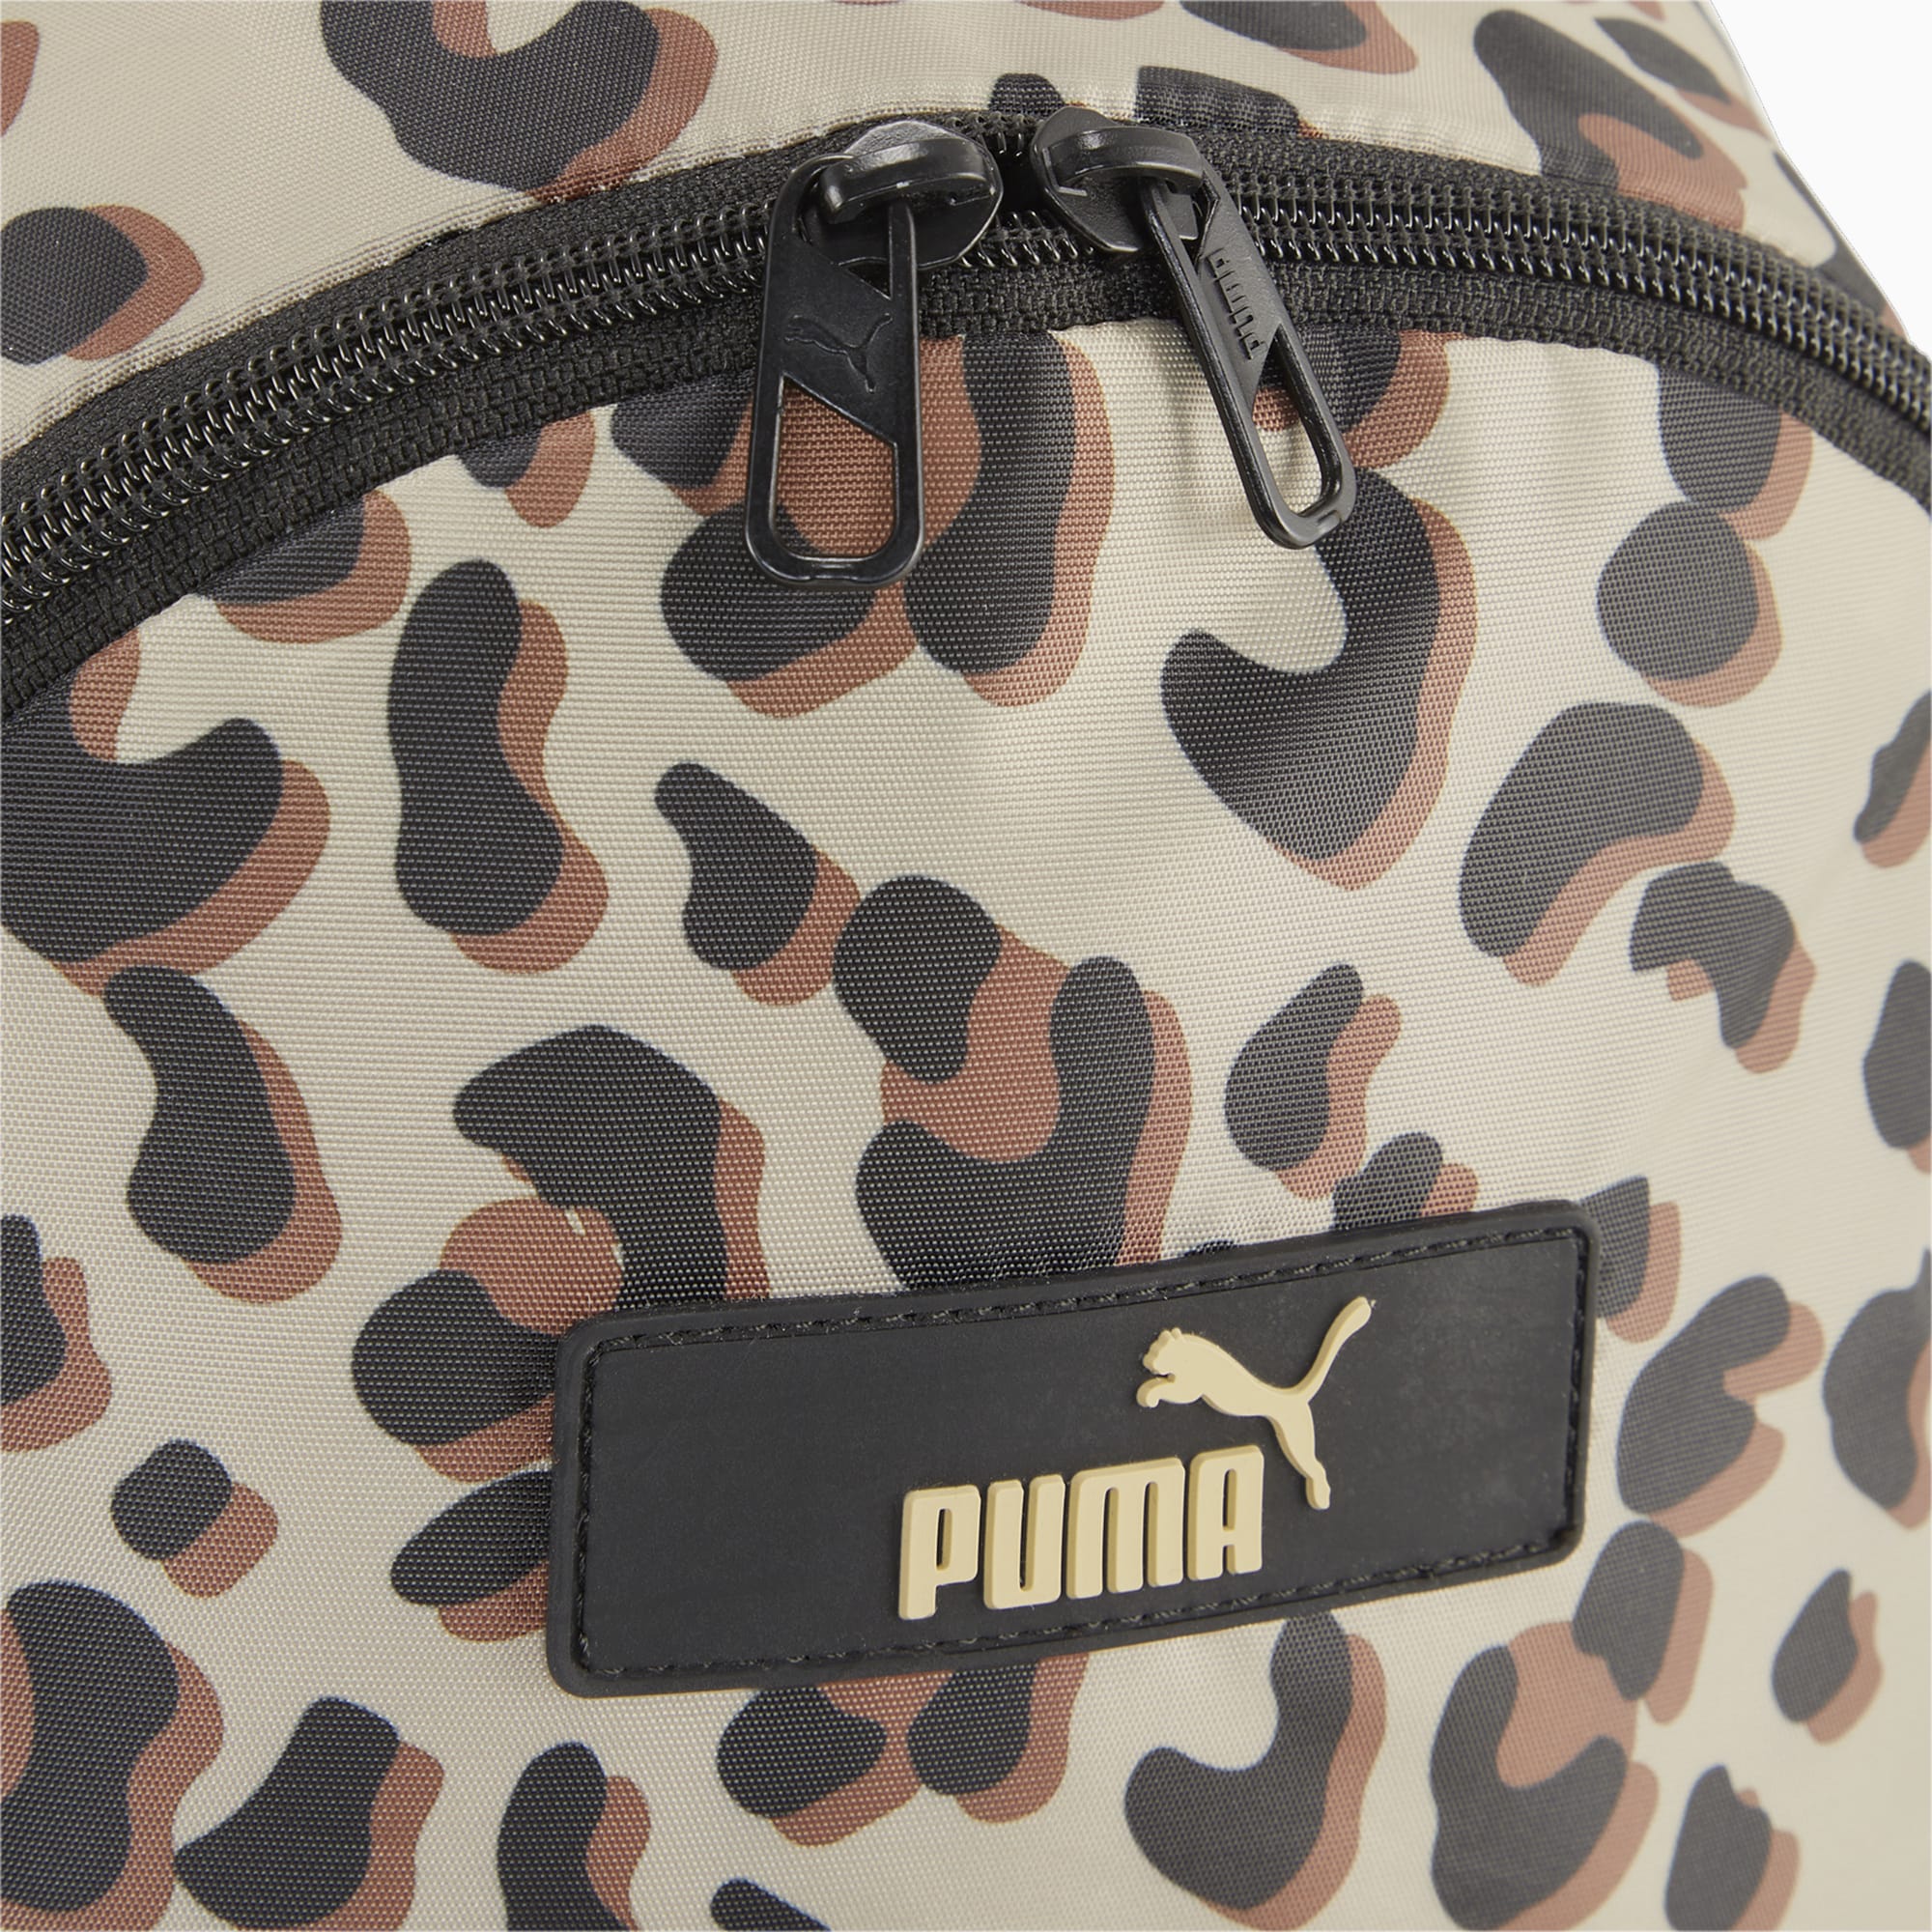 Puma core pop backpack in de kleur ecru.